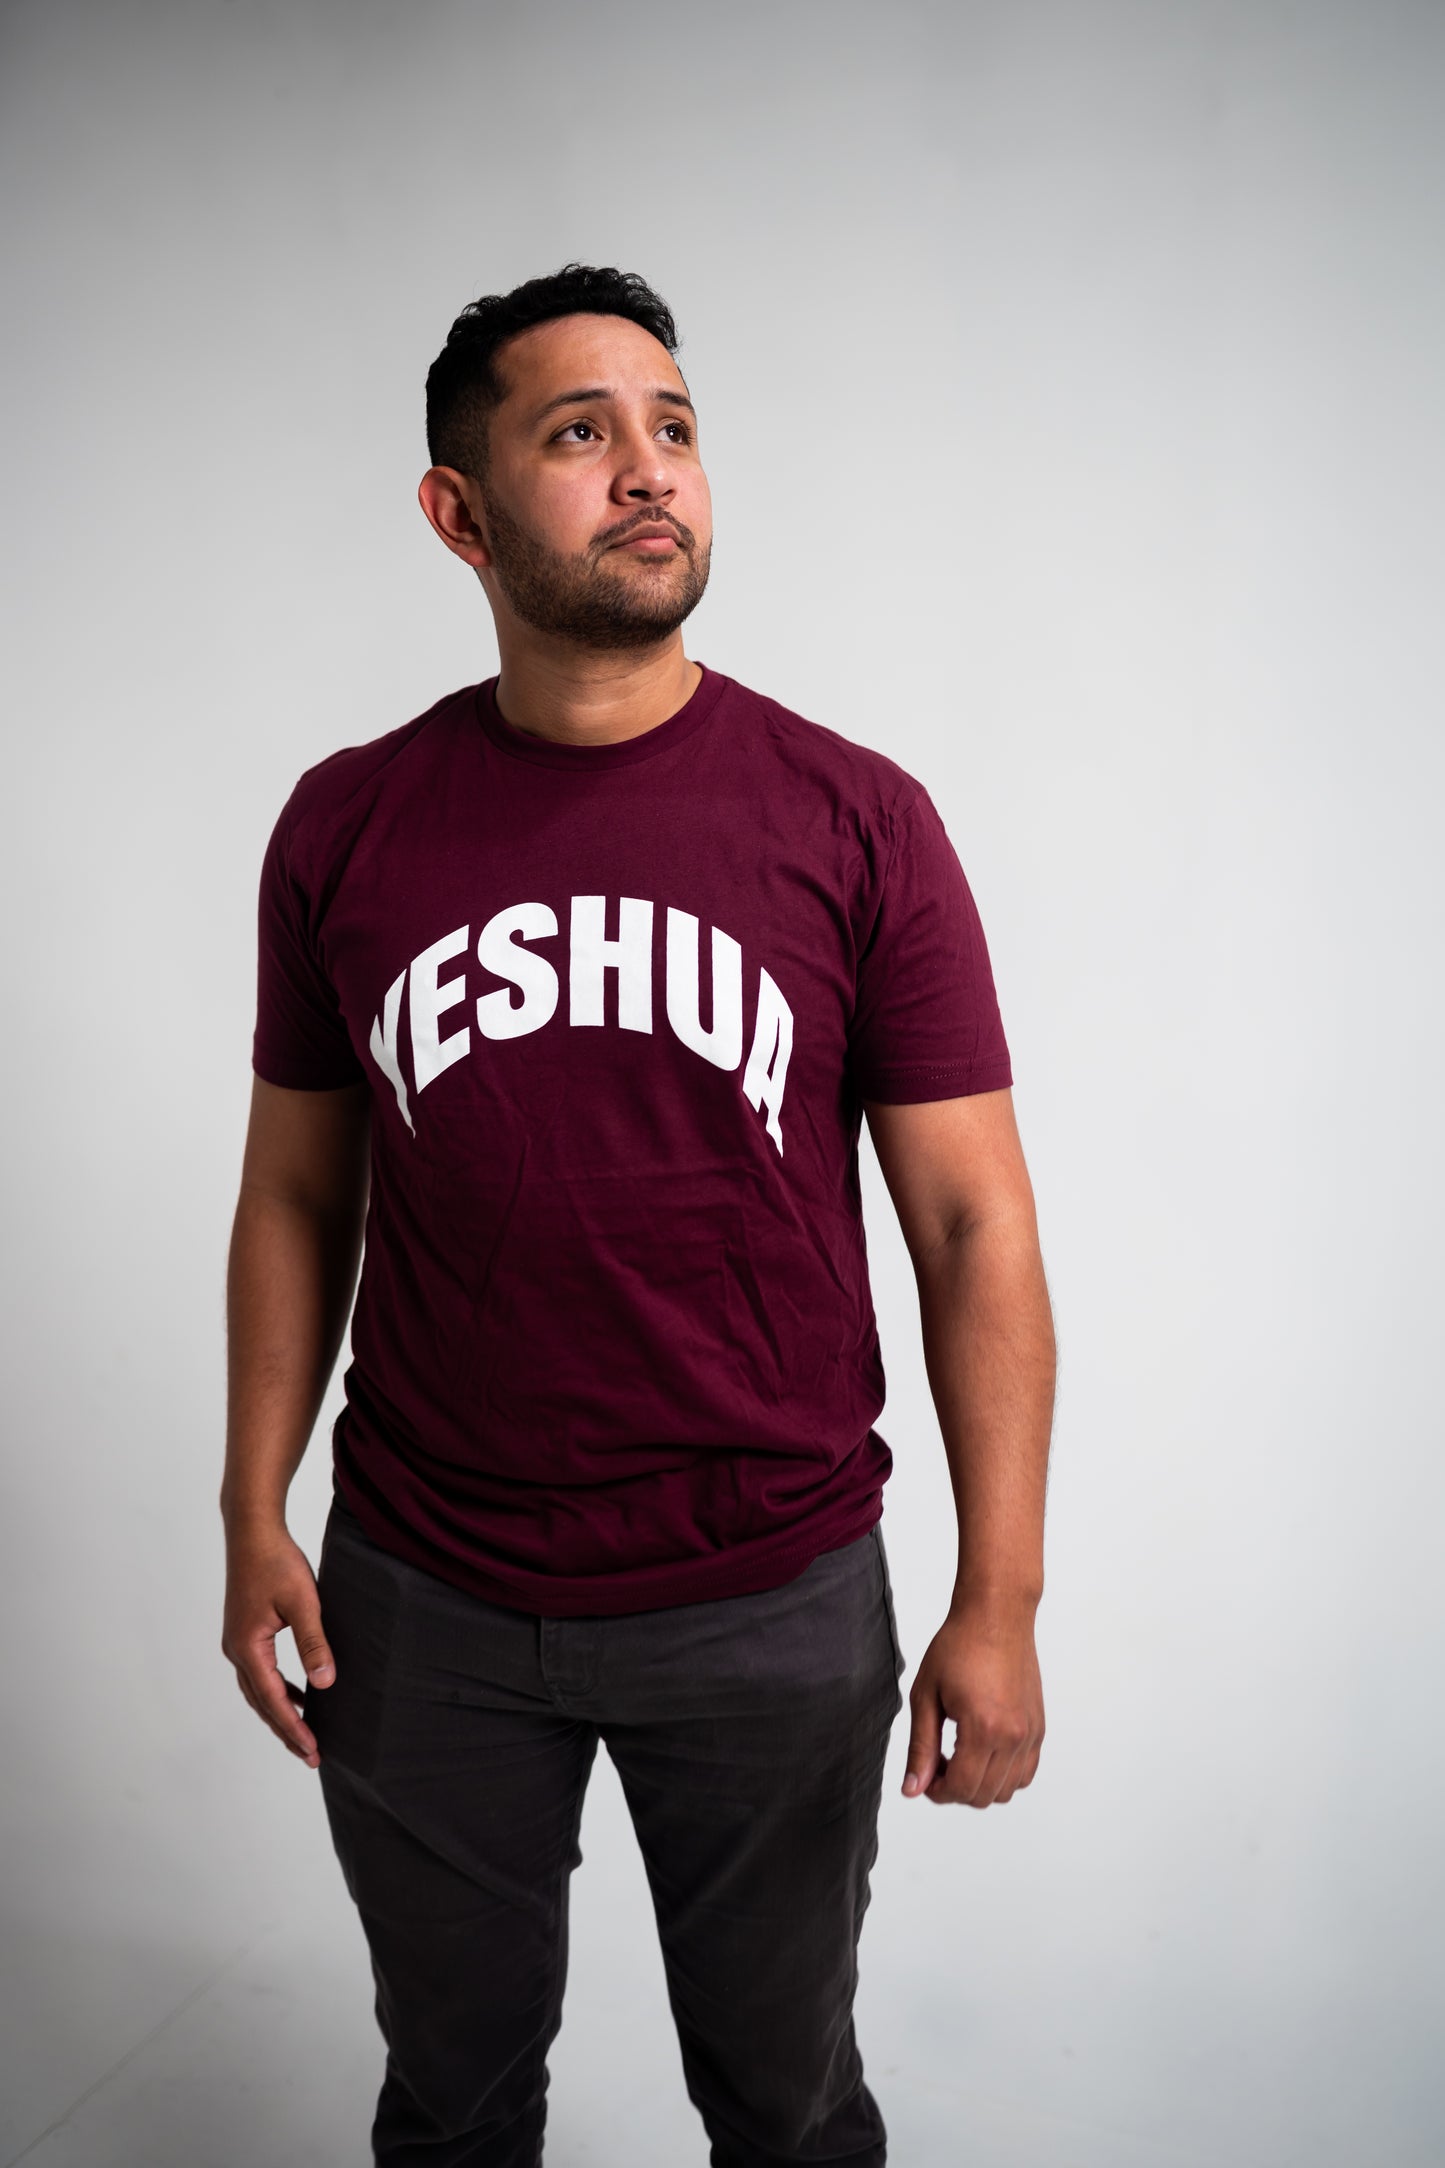 YESHUA T-Shirt